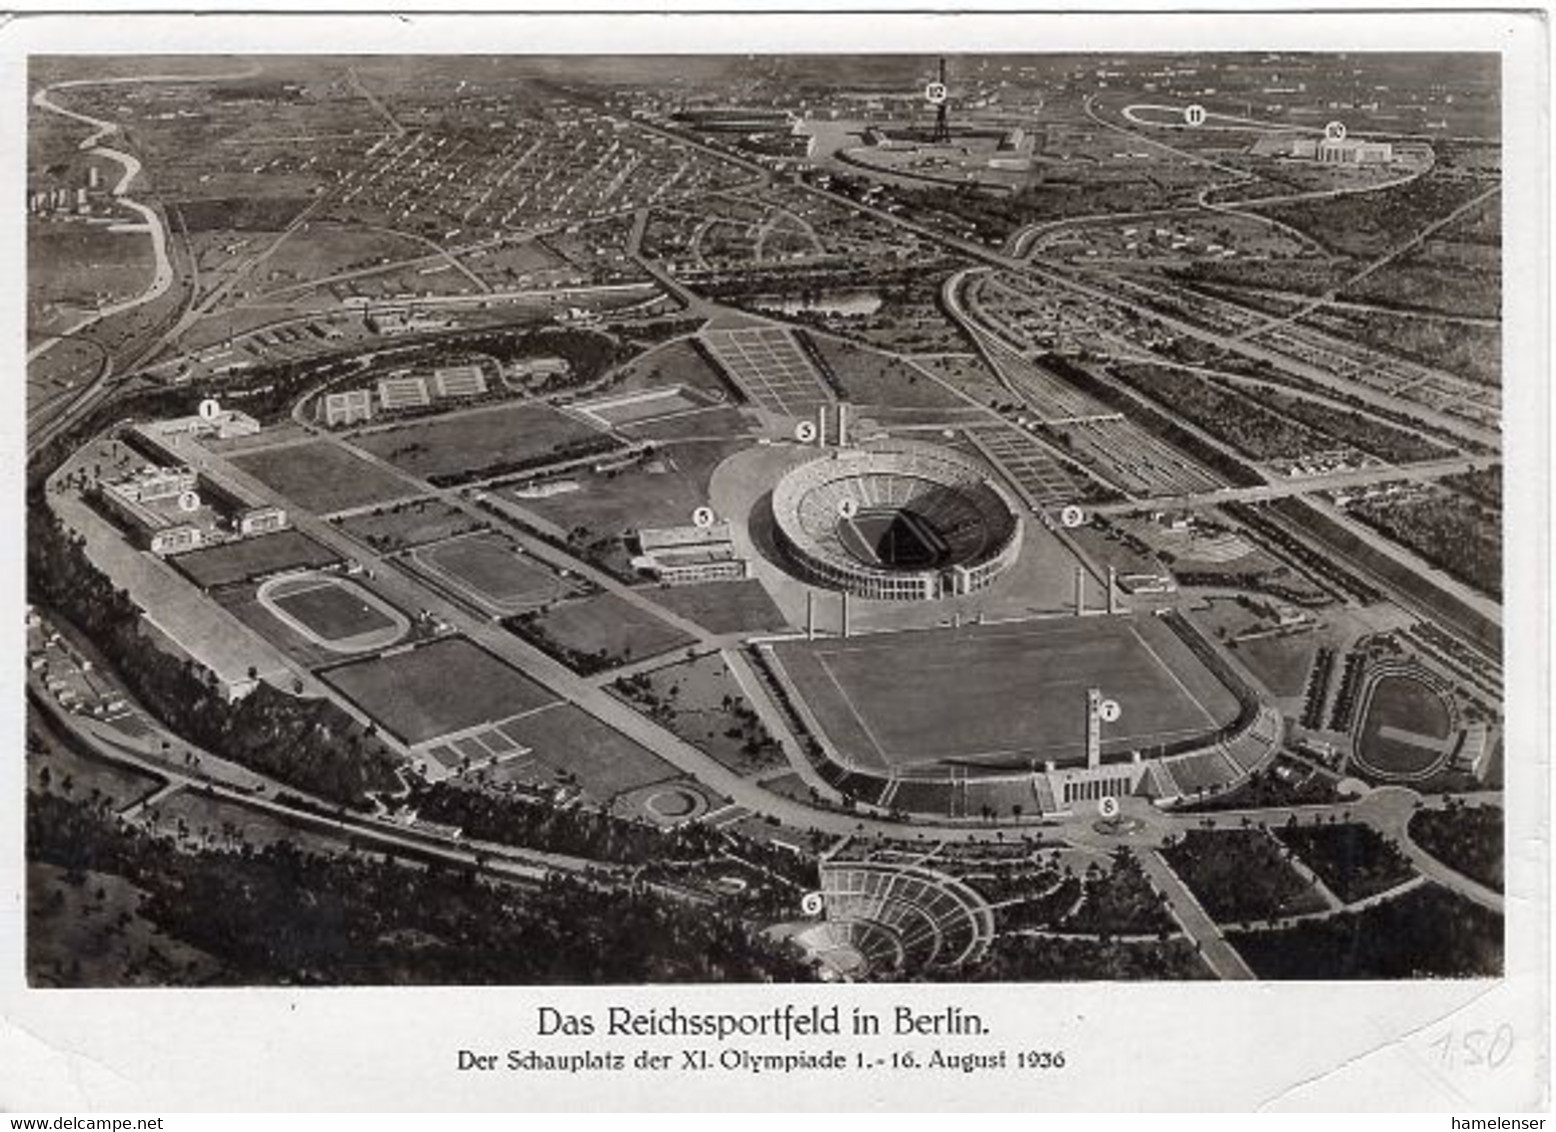 49824 - Deutsches Reich - 1936 - 6Pfg. Sommerolympiade A. Kte. M. MaschStpl. BERLIN - AUSSTELLUNG DEUTSCHLAND -> N'berg - Sommer 1936: Berlin